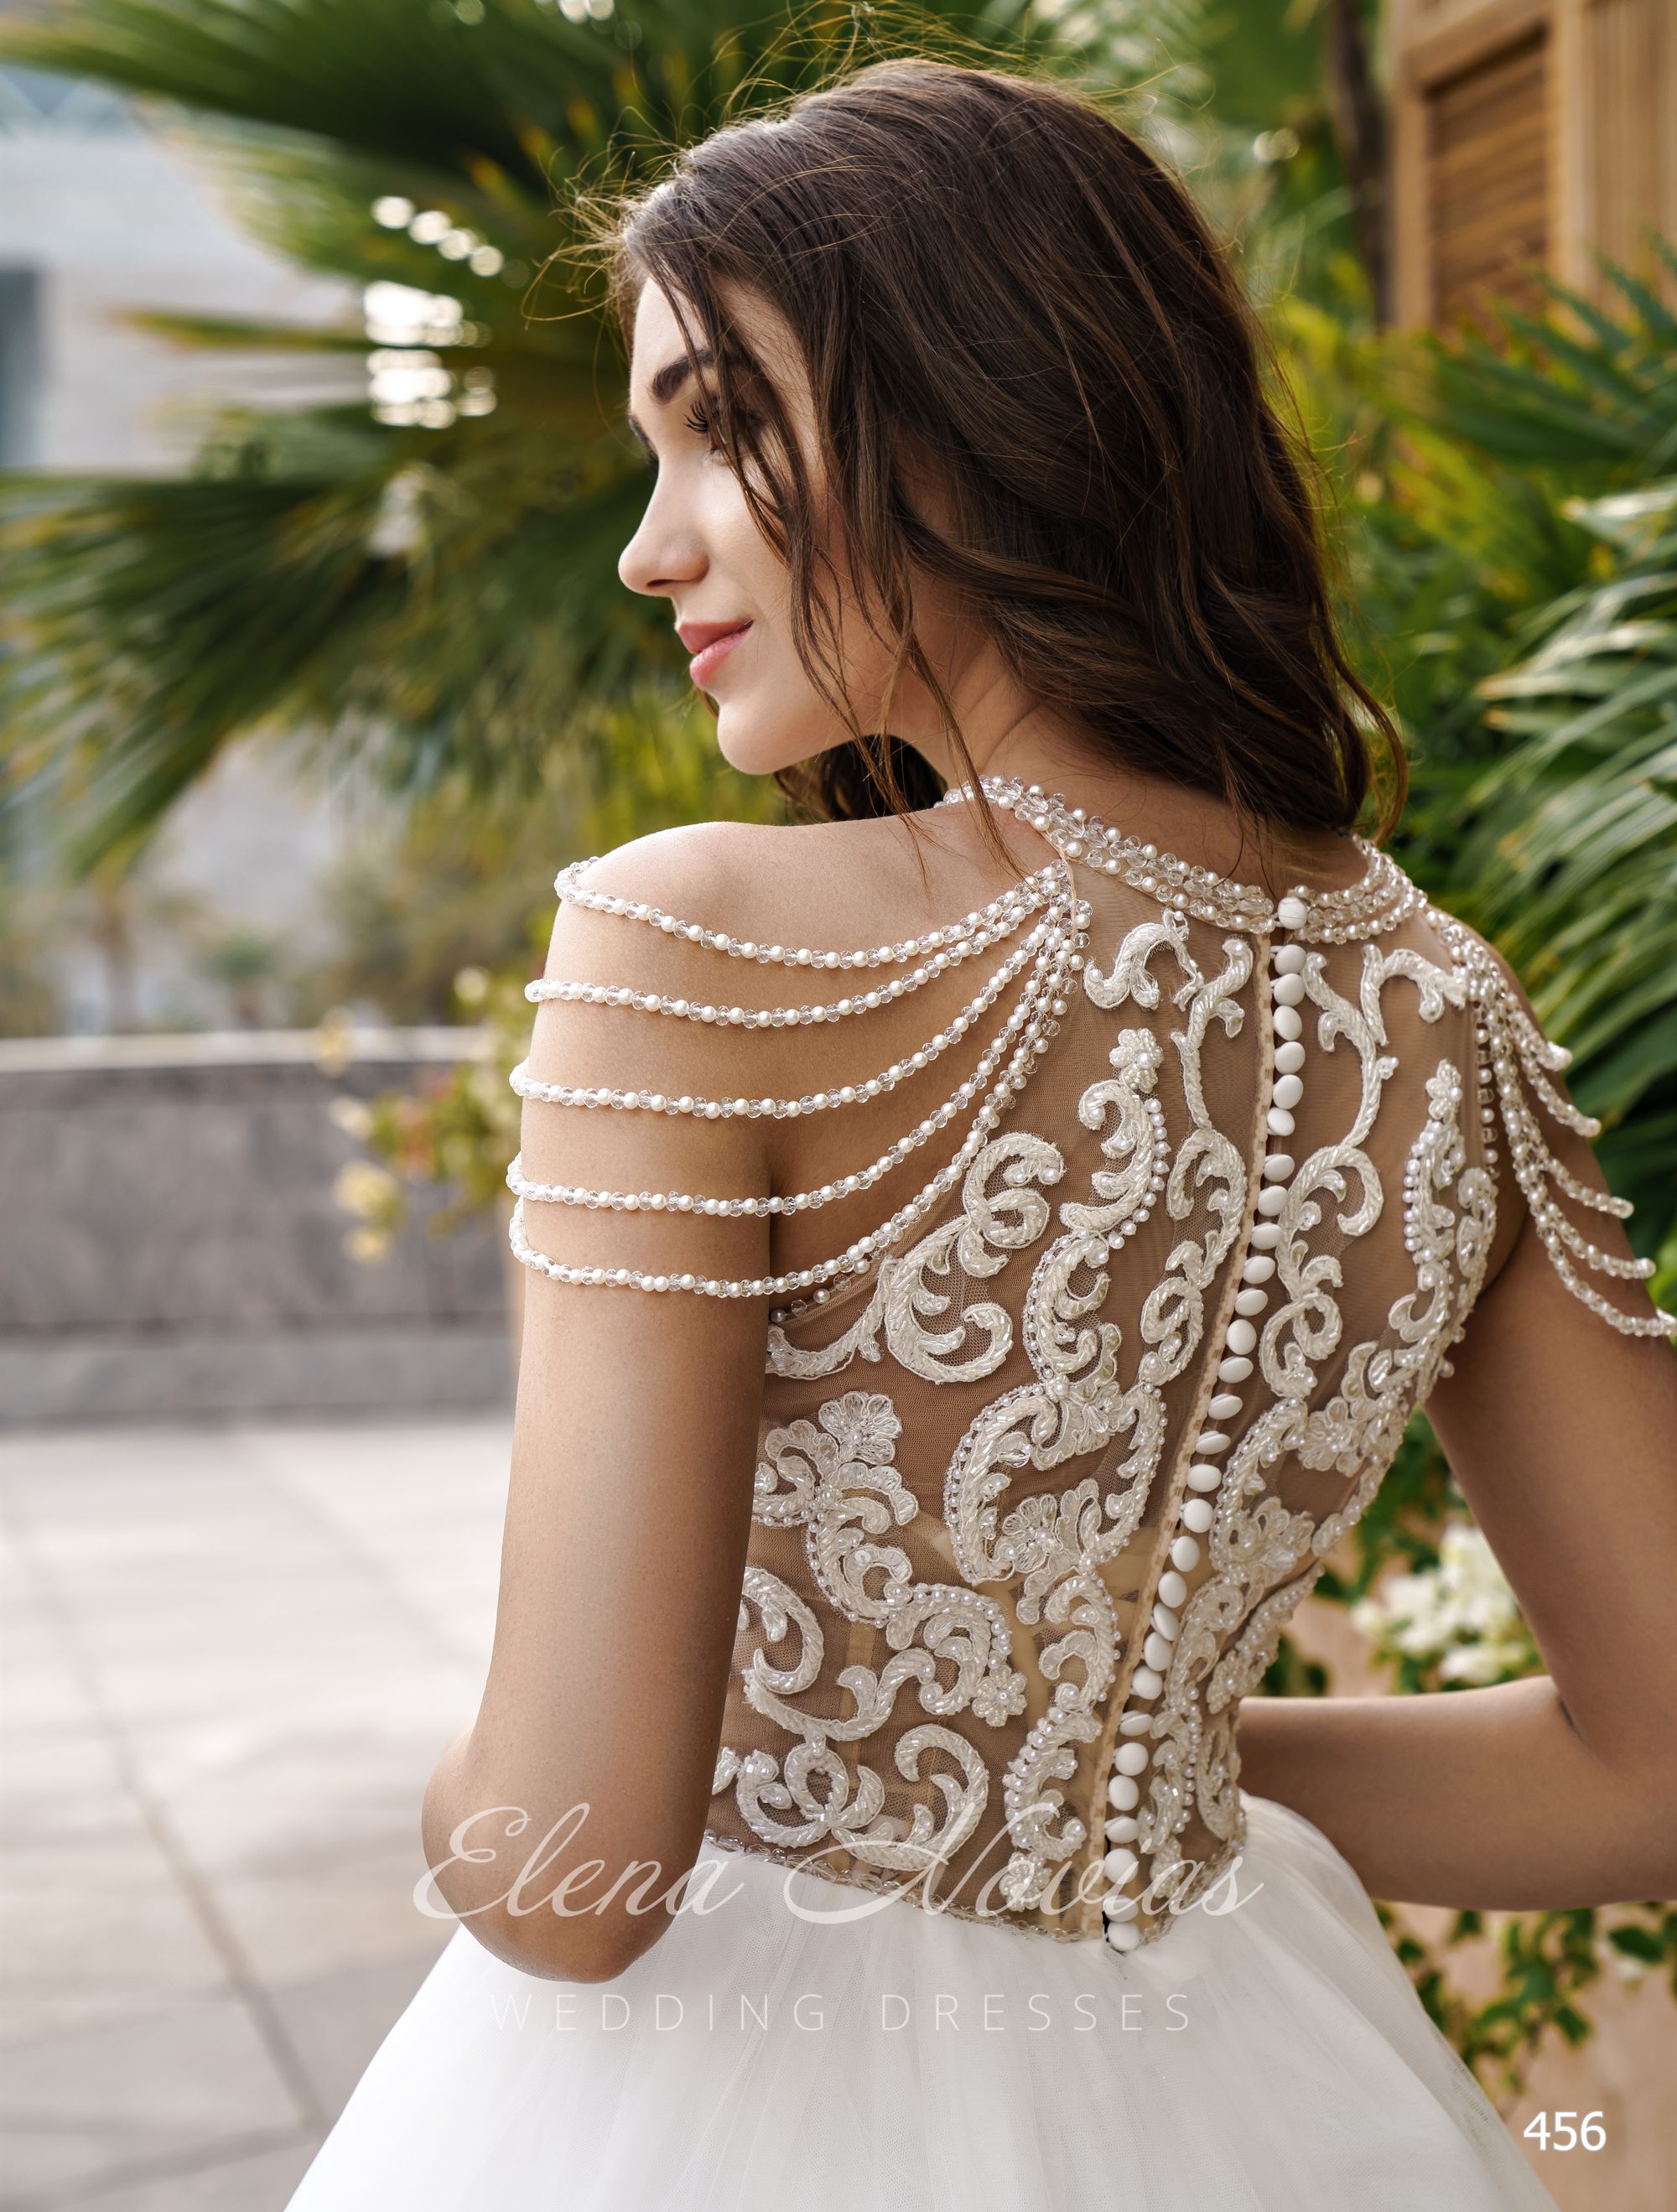 Пышное свадебное платье с гипюровым корсетом от ТМ Elena Novias